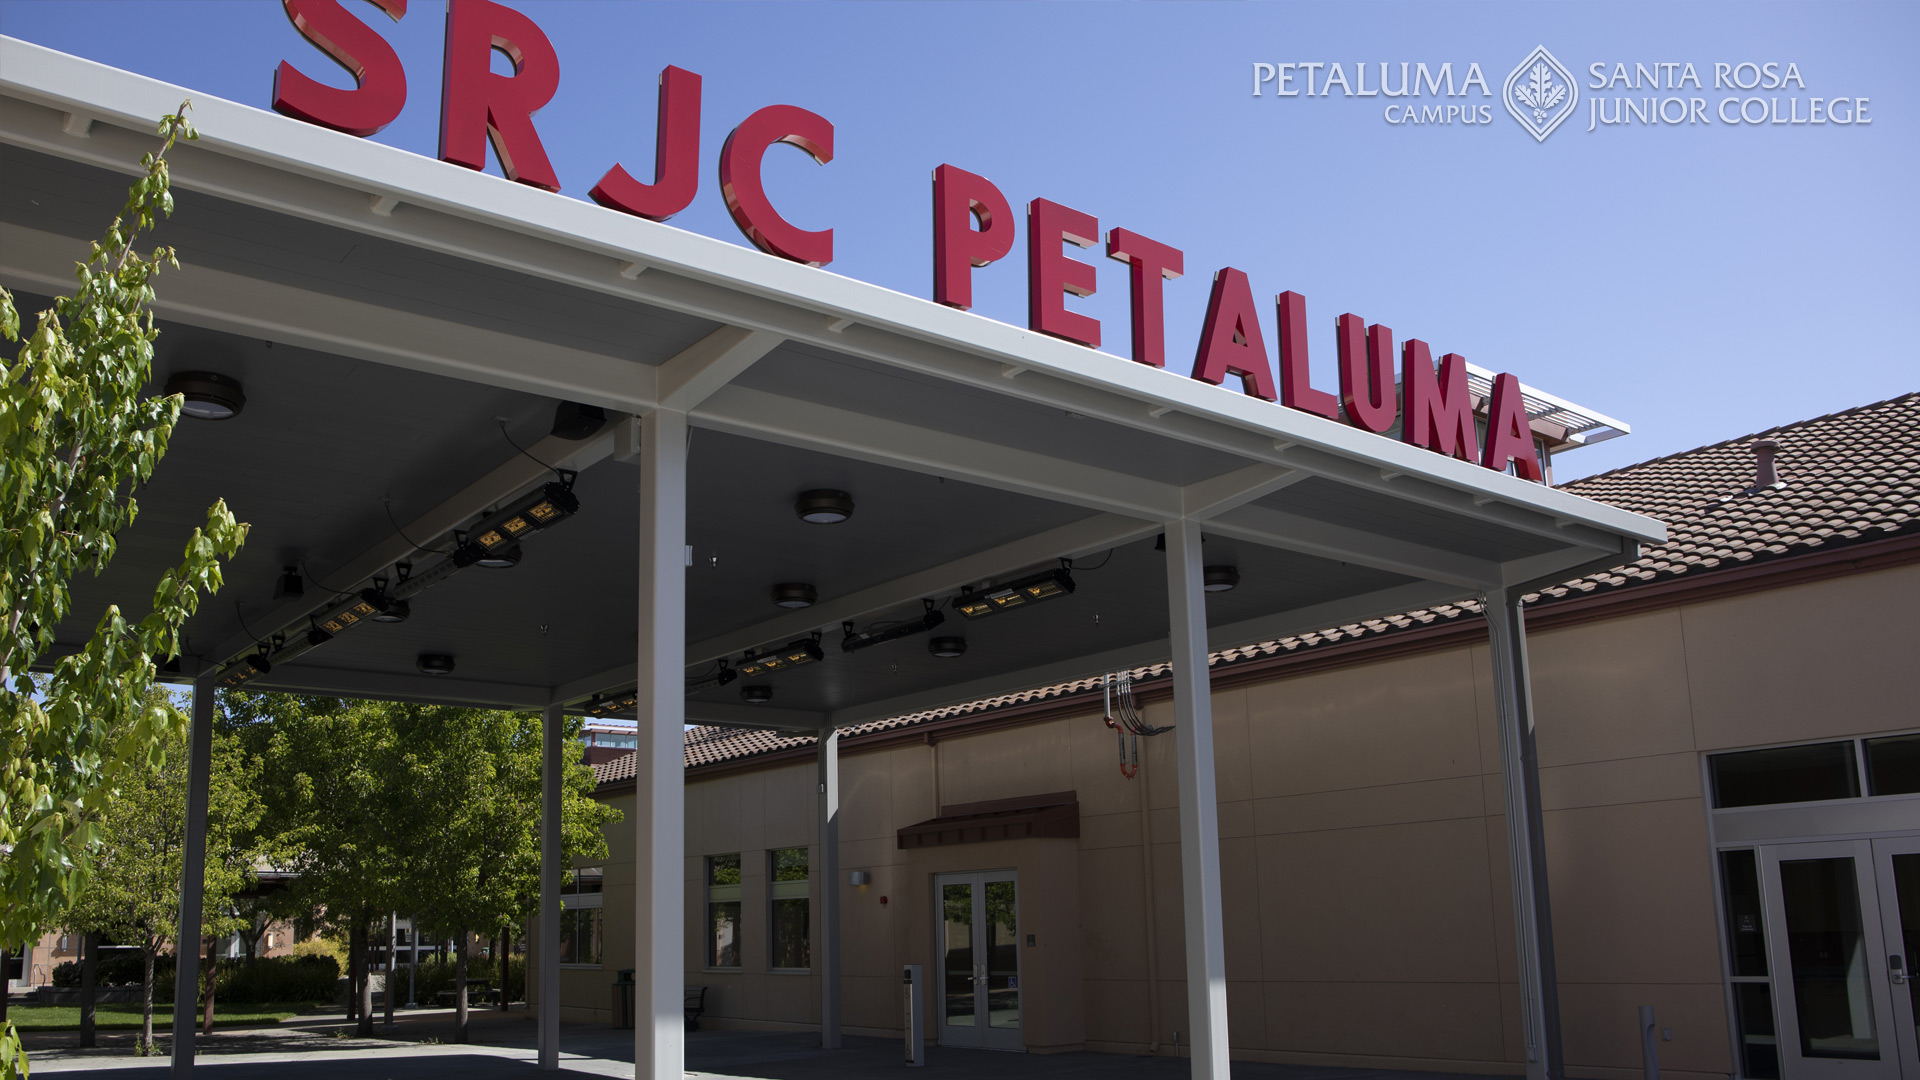 Petaluma campus building image